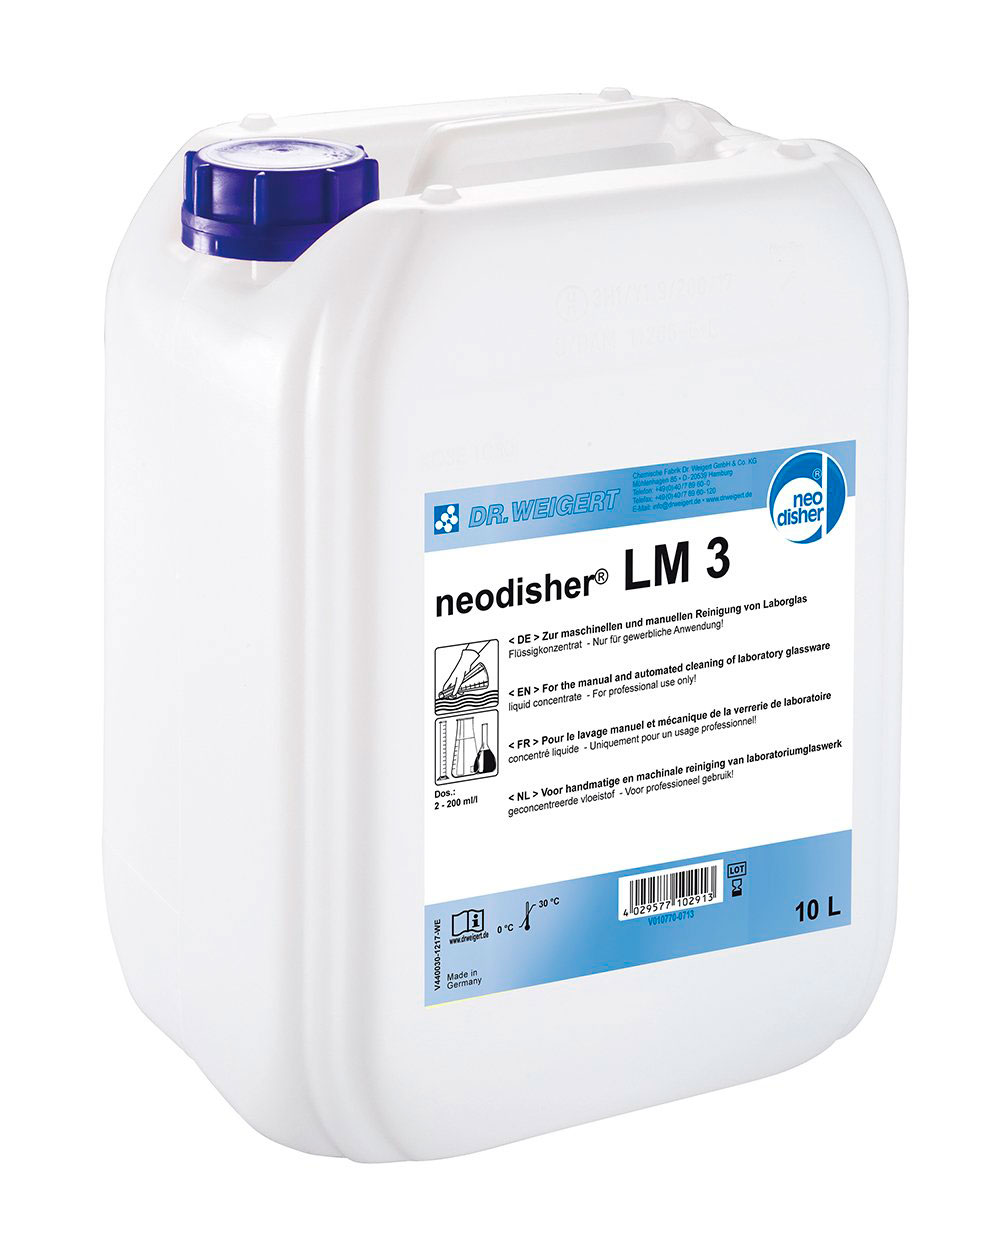 Detergente Neodisher LM3, limpieza manual. Detergente líquido alcalino con agentes dispersantes que arrancan los residuos pocos solubles. Es también adecuado para lavadoras automáticas. Poco espumoso y sin fosfatos.